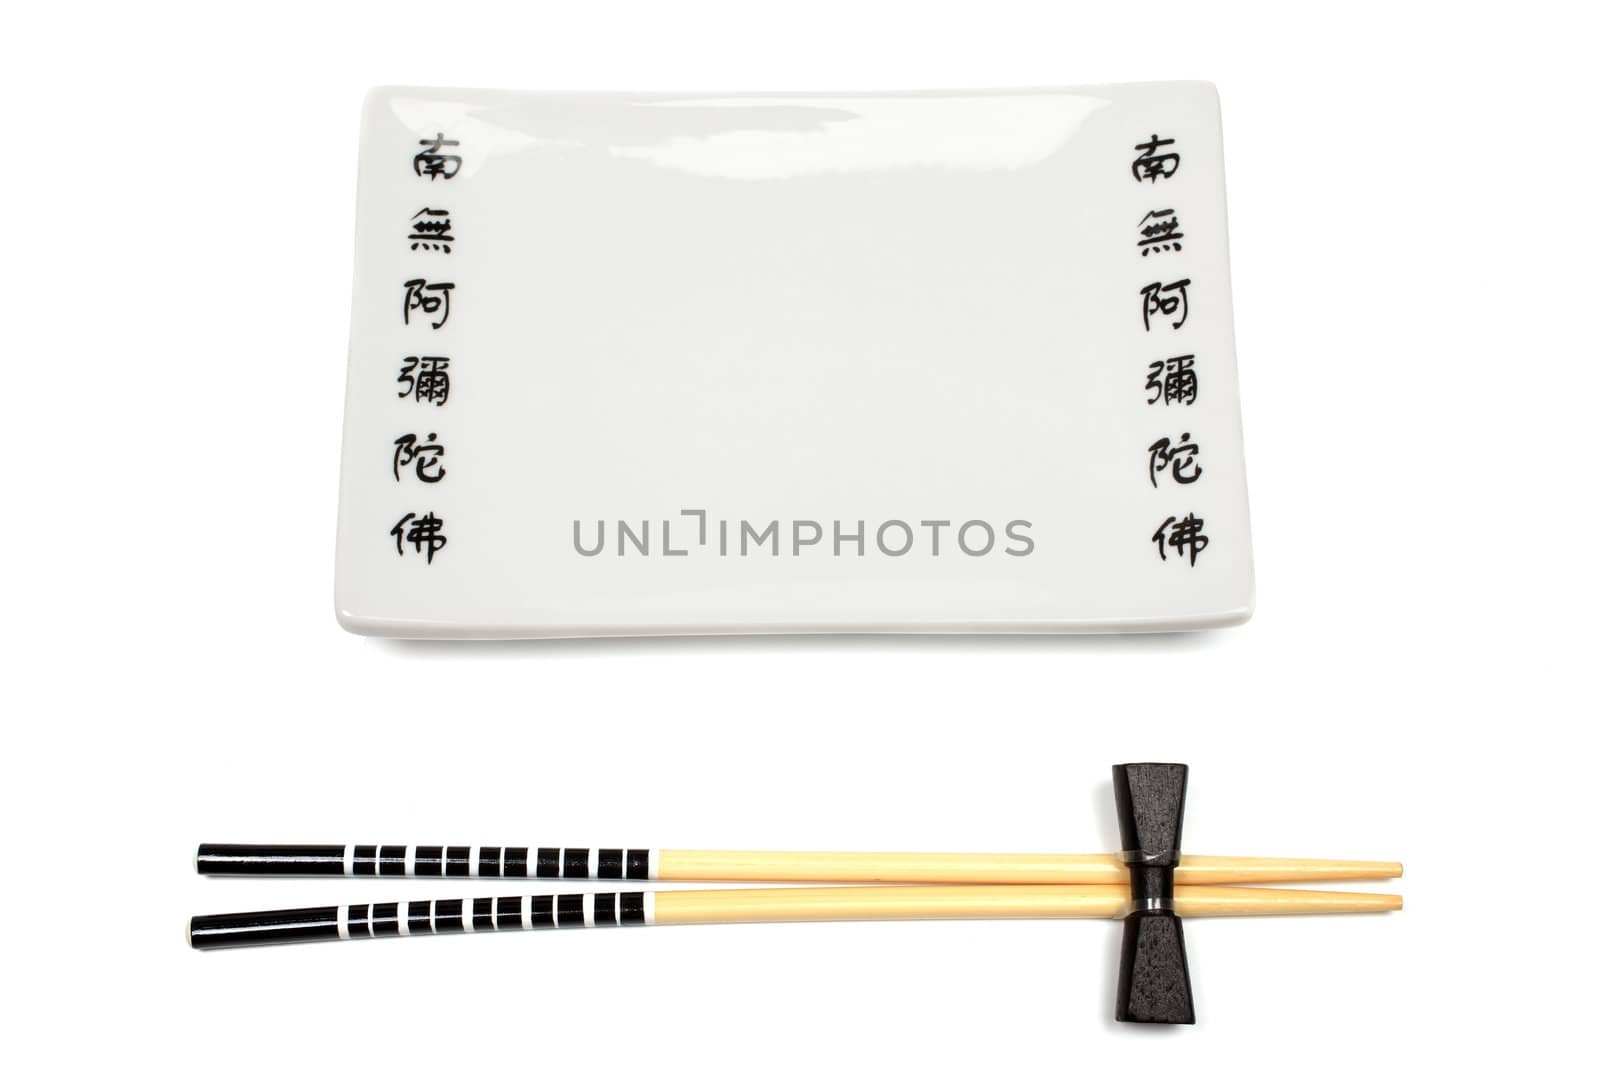 Unused japanese chopsticks and dishware isolated on white background.